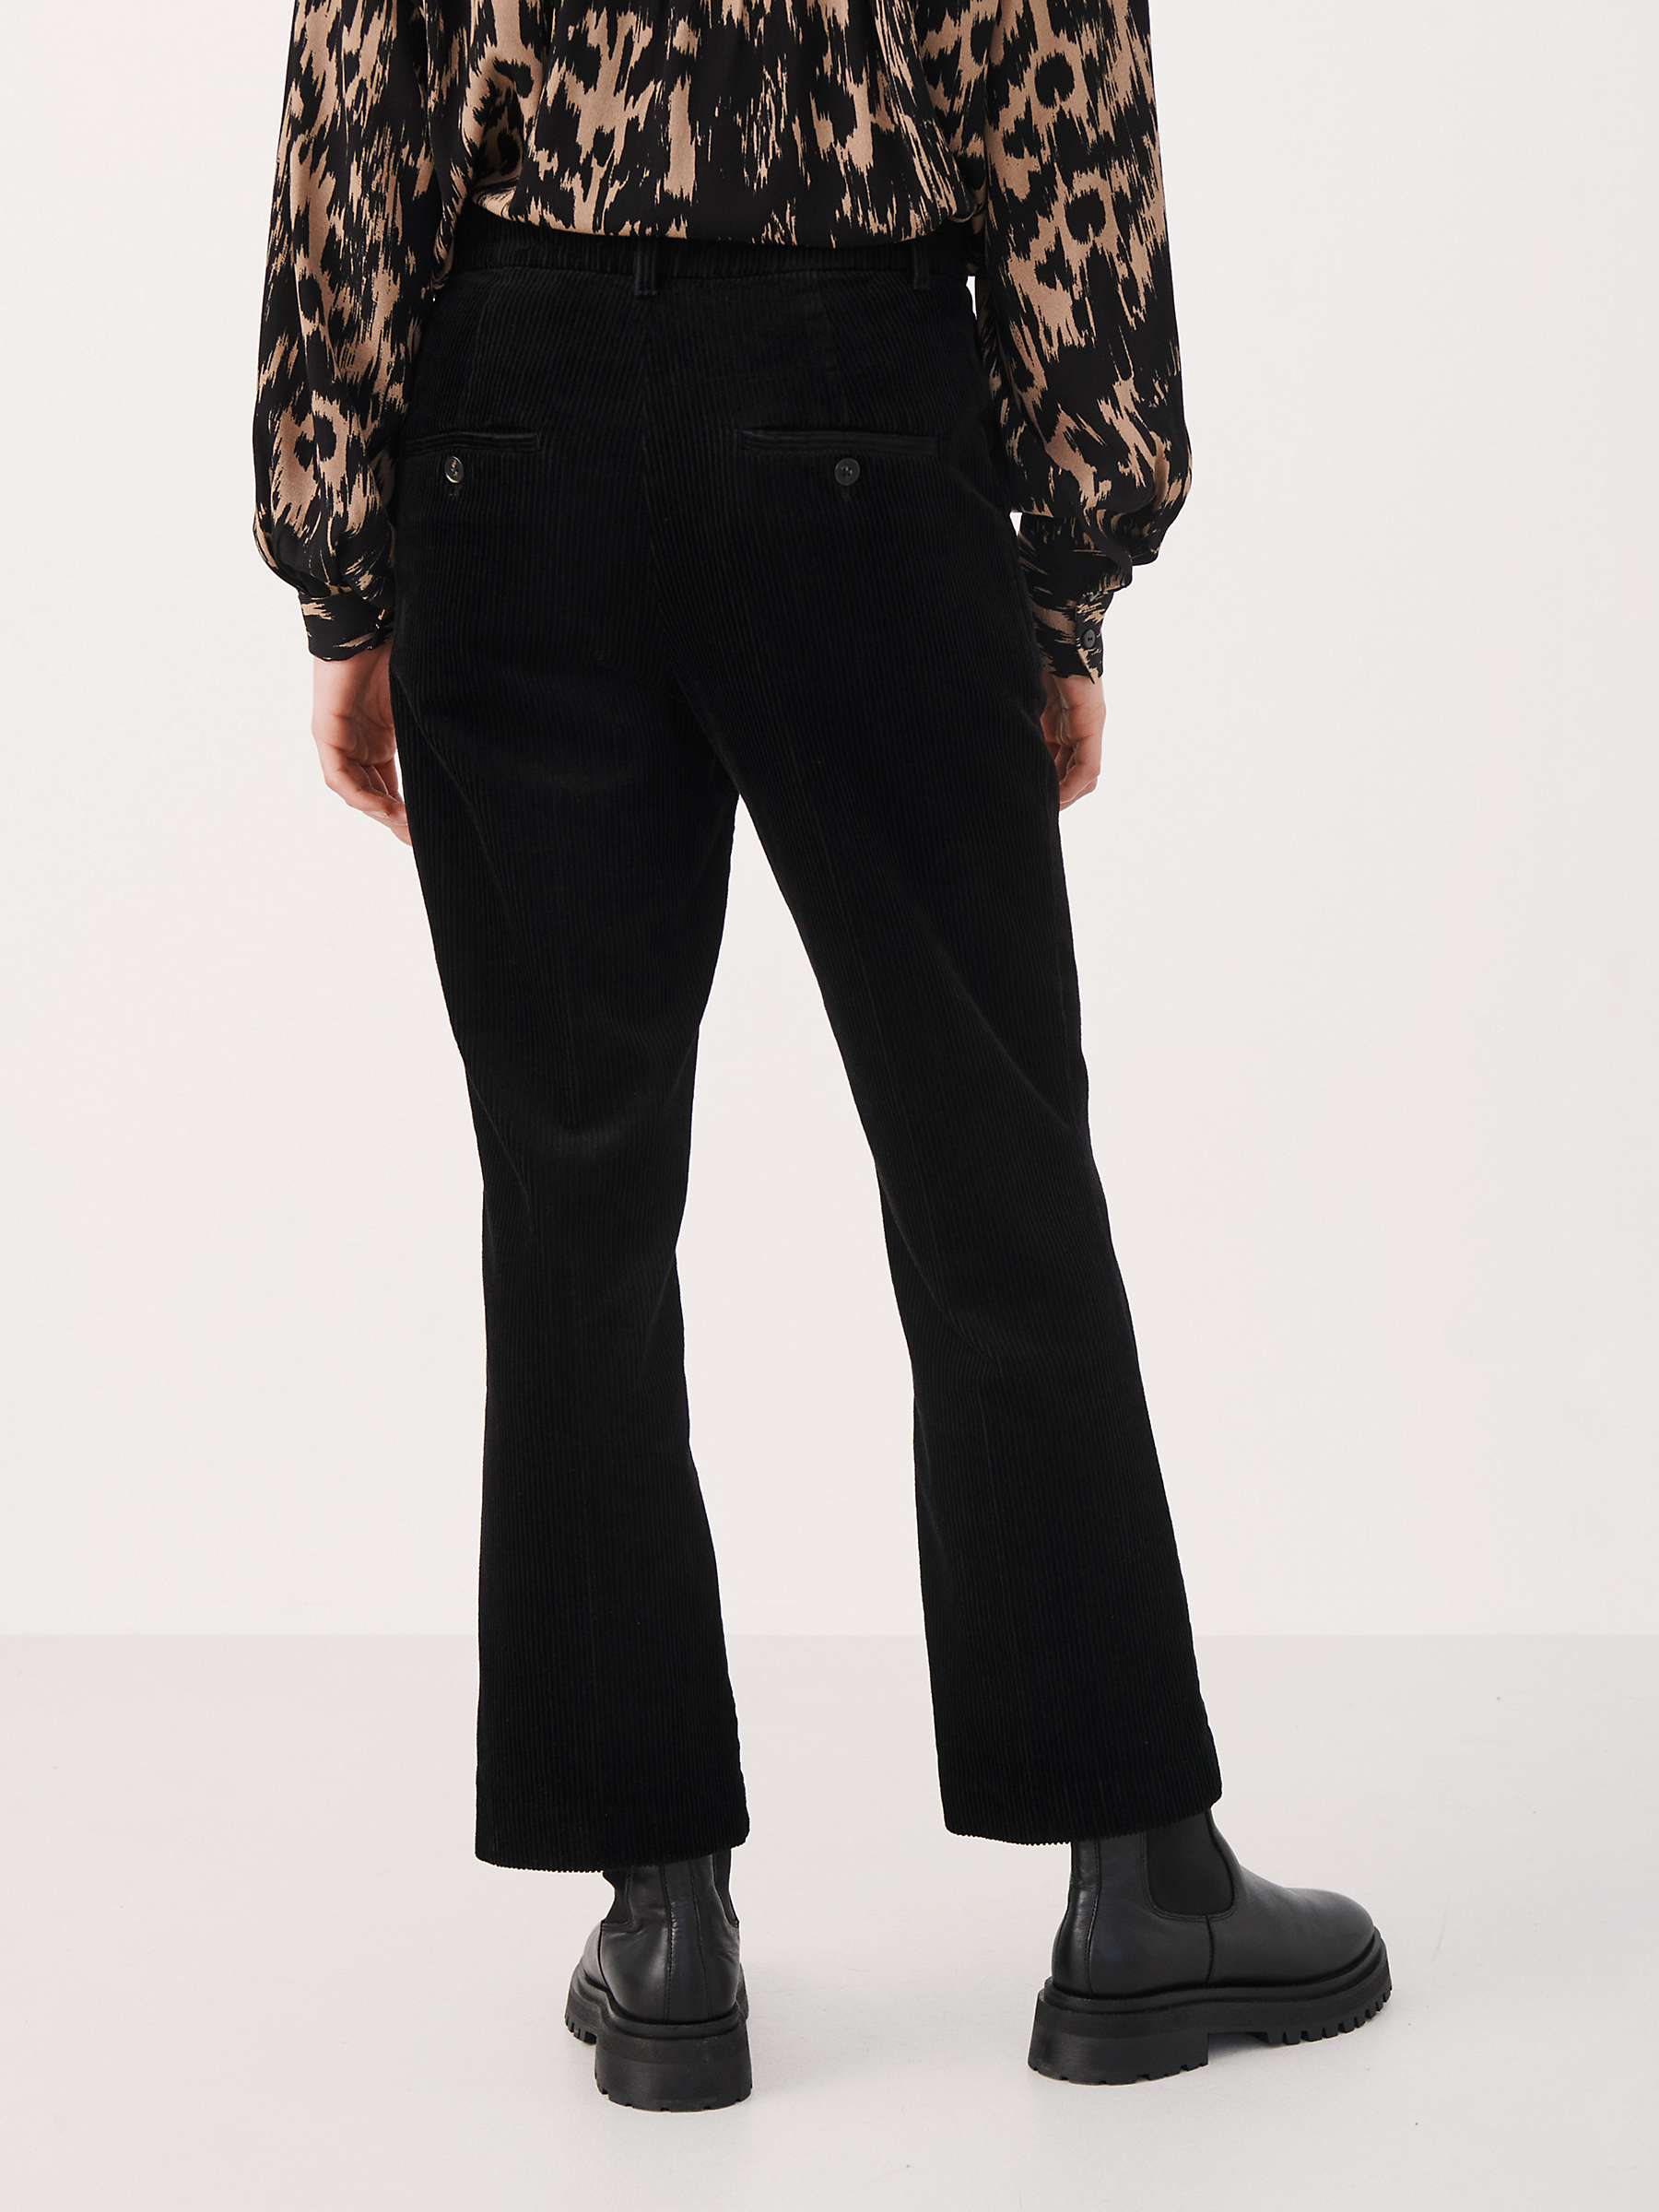 Buy Part Two Misha Plain Corduroy Trousers, Black Online at johnlewis.com